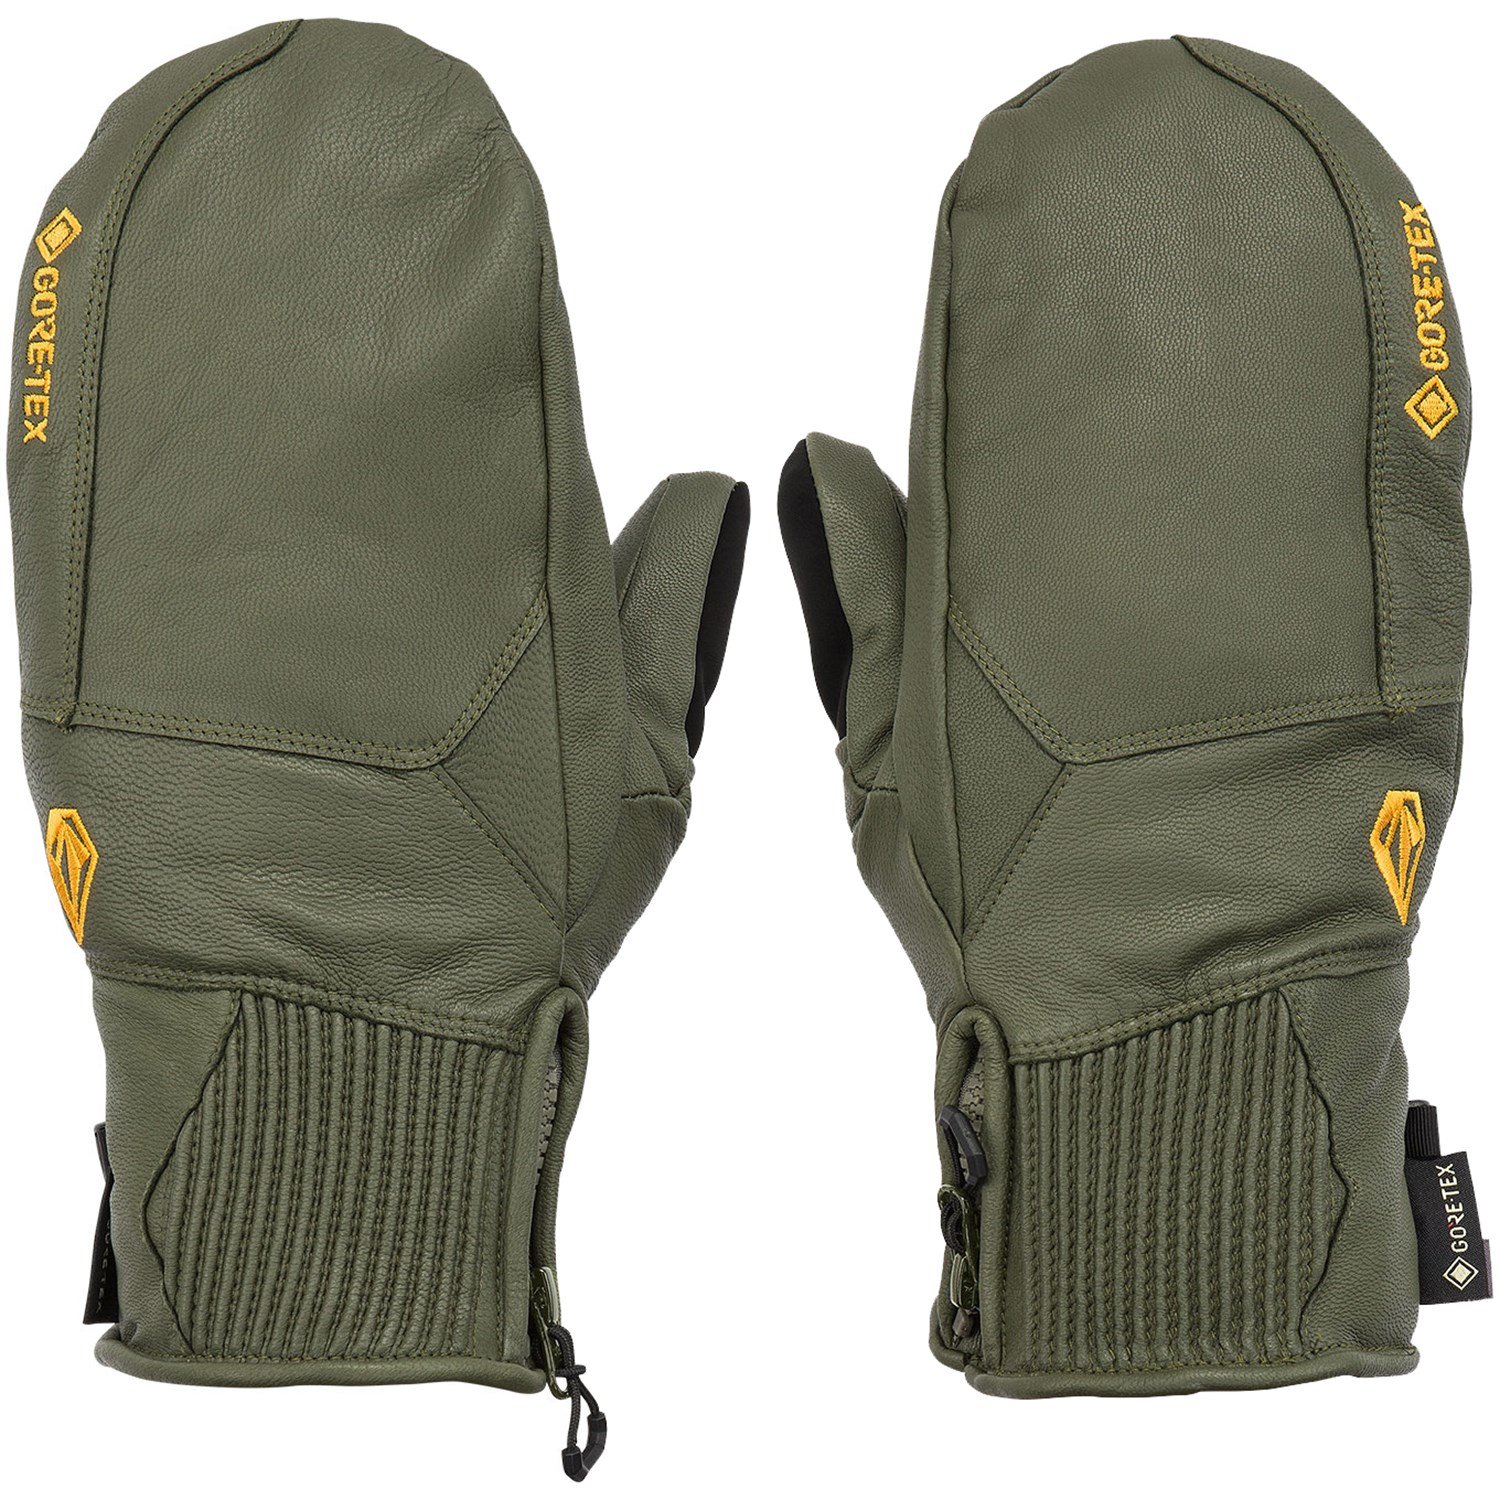 Рукавицы Volcom Service GORE-TEX, цвет Military рабочие защитные перчатки кожаные износостойкие овчины охотничьи защитные перчатки для ремонта мотоцикла защитные перчатки для водителя